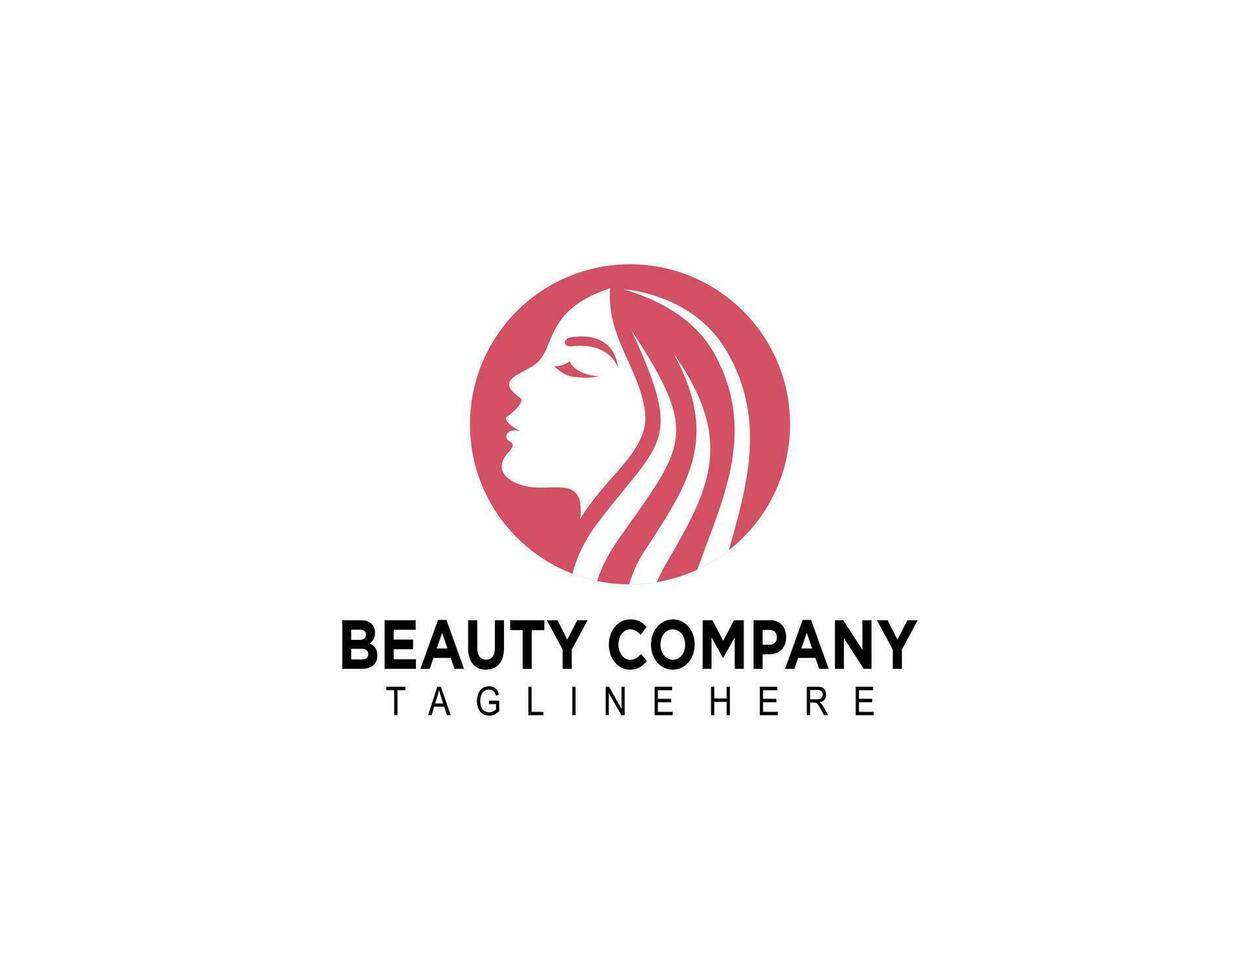 beauté salon logo conception avec femelle visage dans négatif longue cheveux femme logo, adapté pour beauté salon, spa, massage, cosmétique et beauté concept vecteur illustration